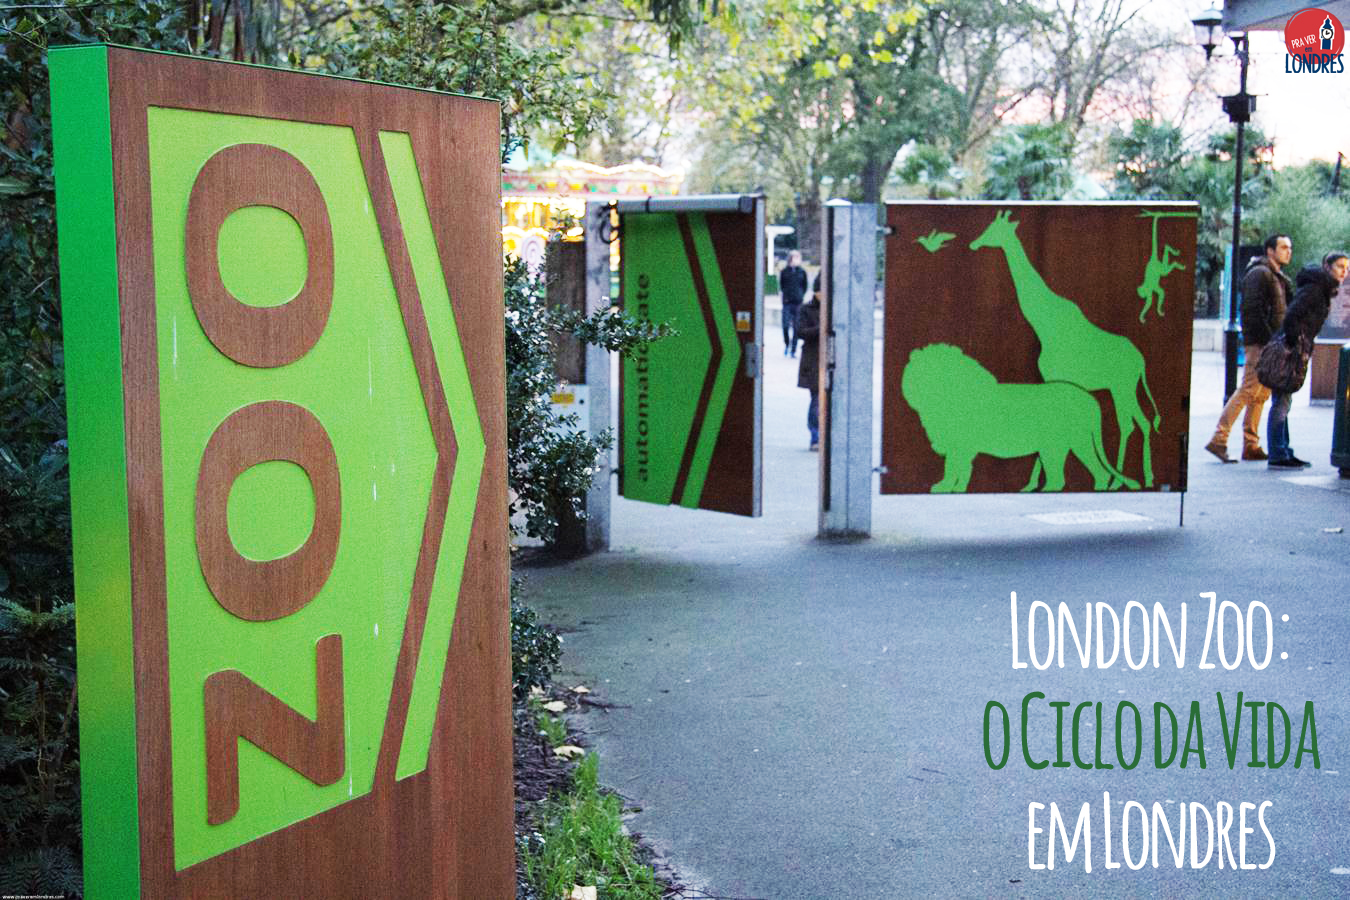 London Zoo: o ciclo da vida em Londres